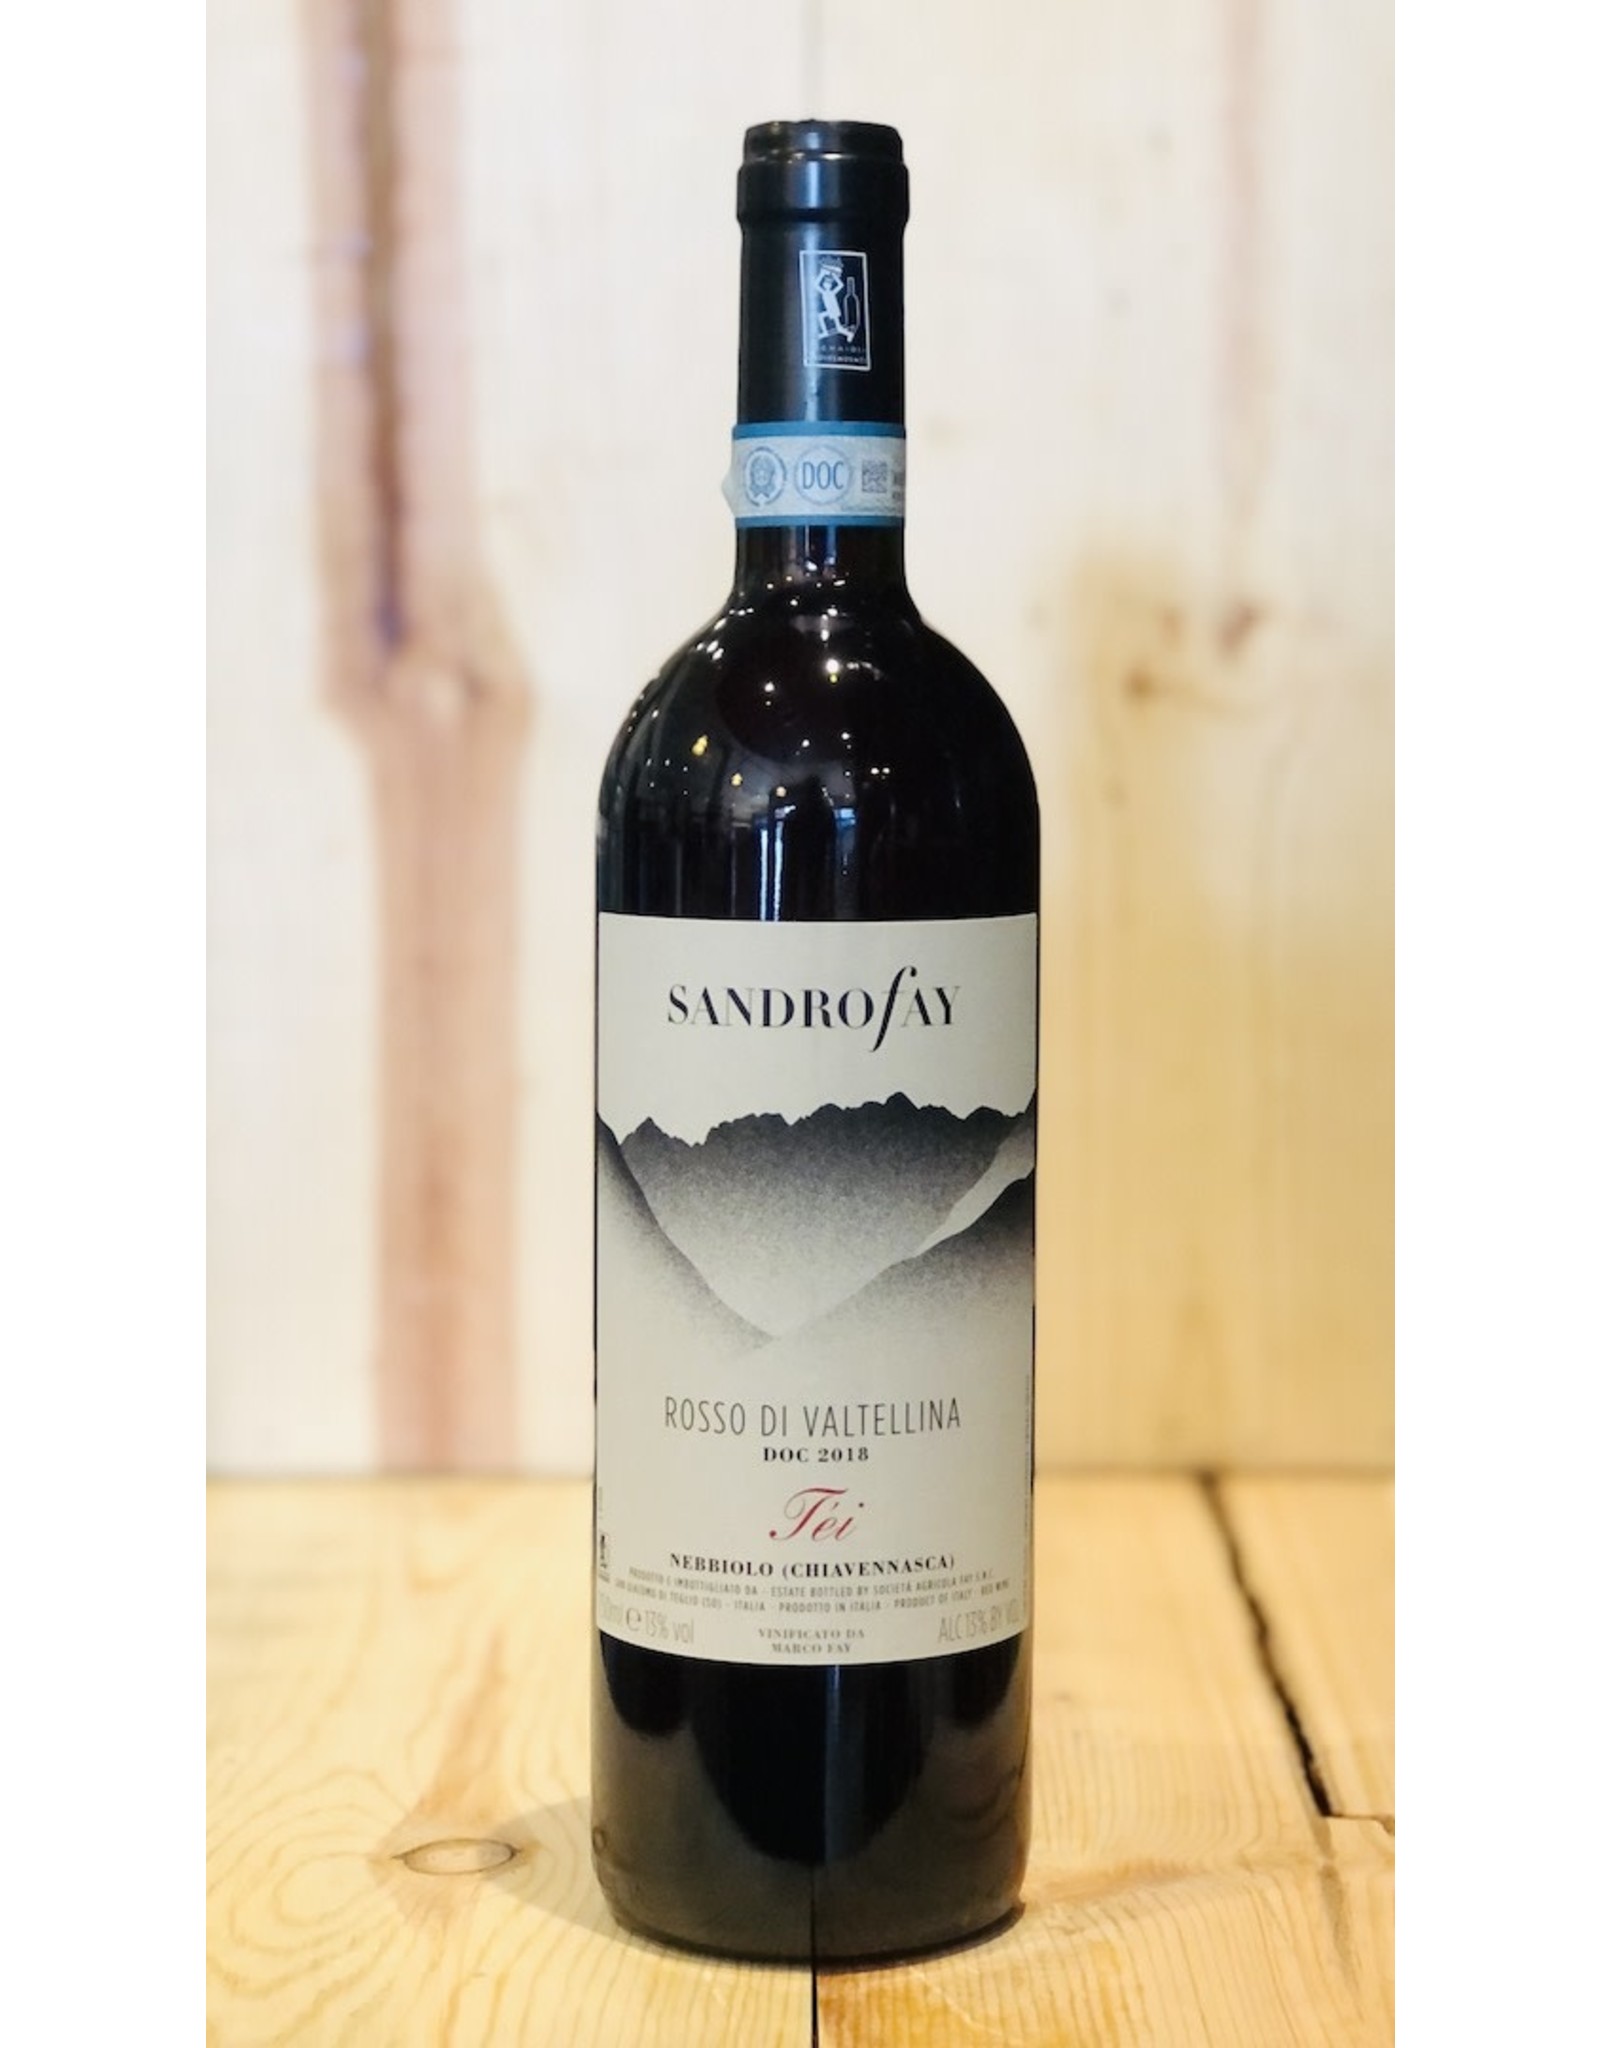 Wine Sandro Fay Rosso di Valtellina